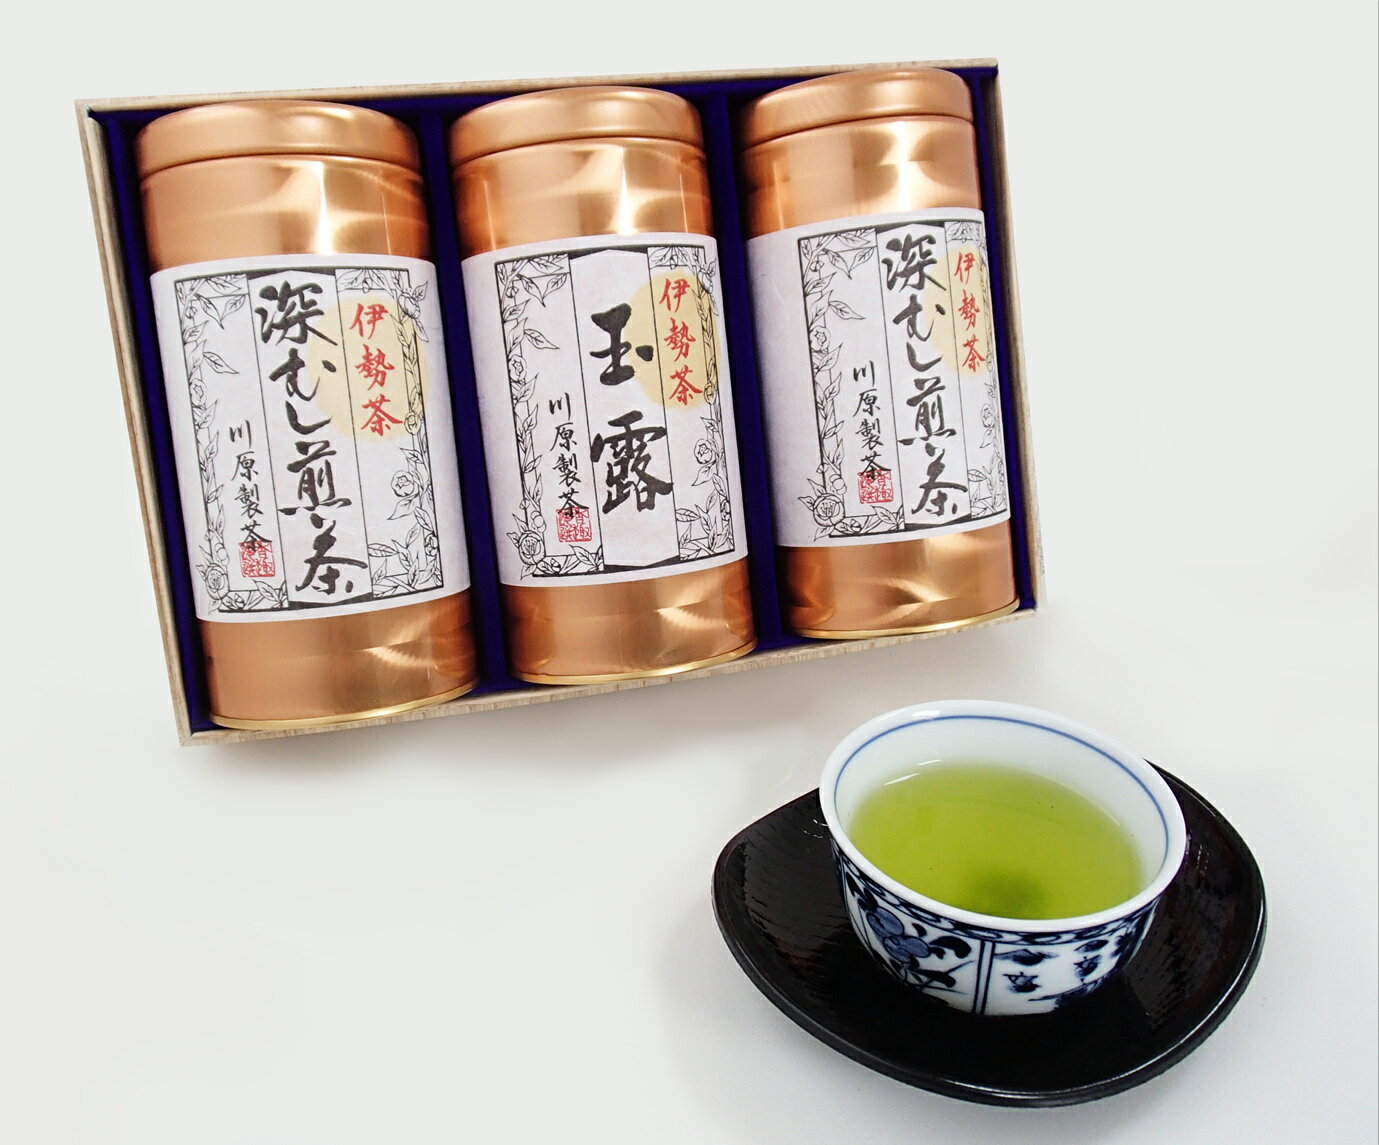 日本三大産地のひとつ 伊勢茶 詰め合わせ B kh-04 ふるさと納税 煎茶